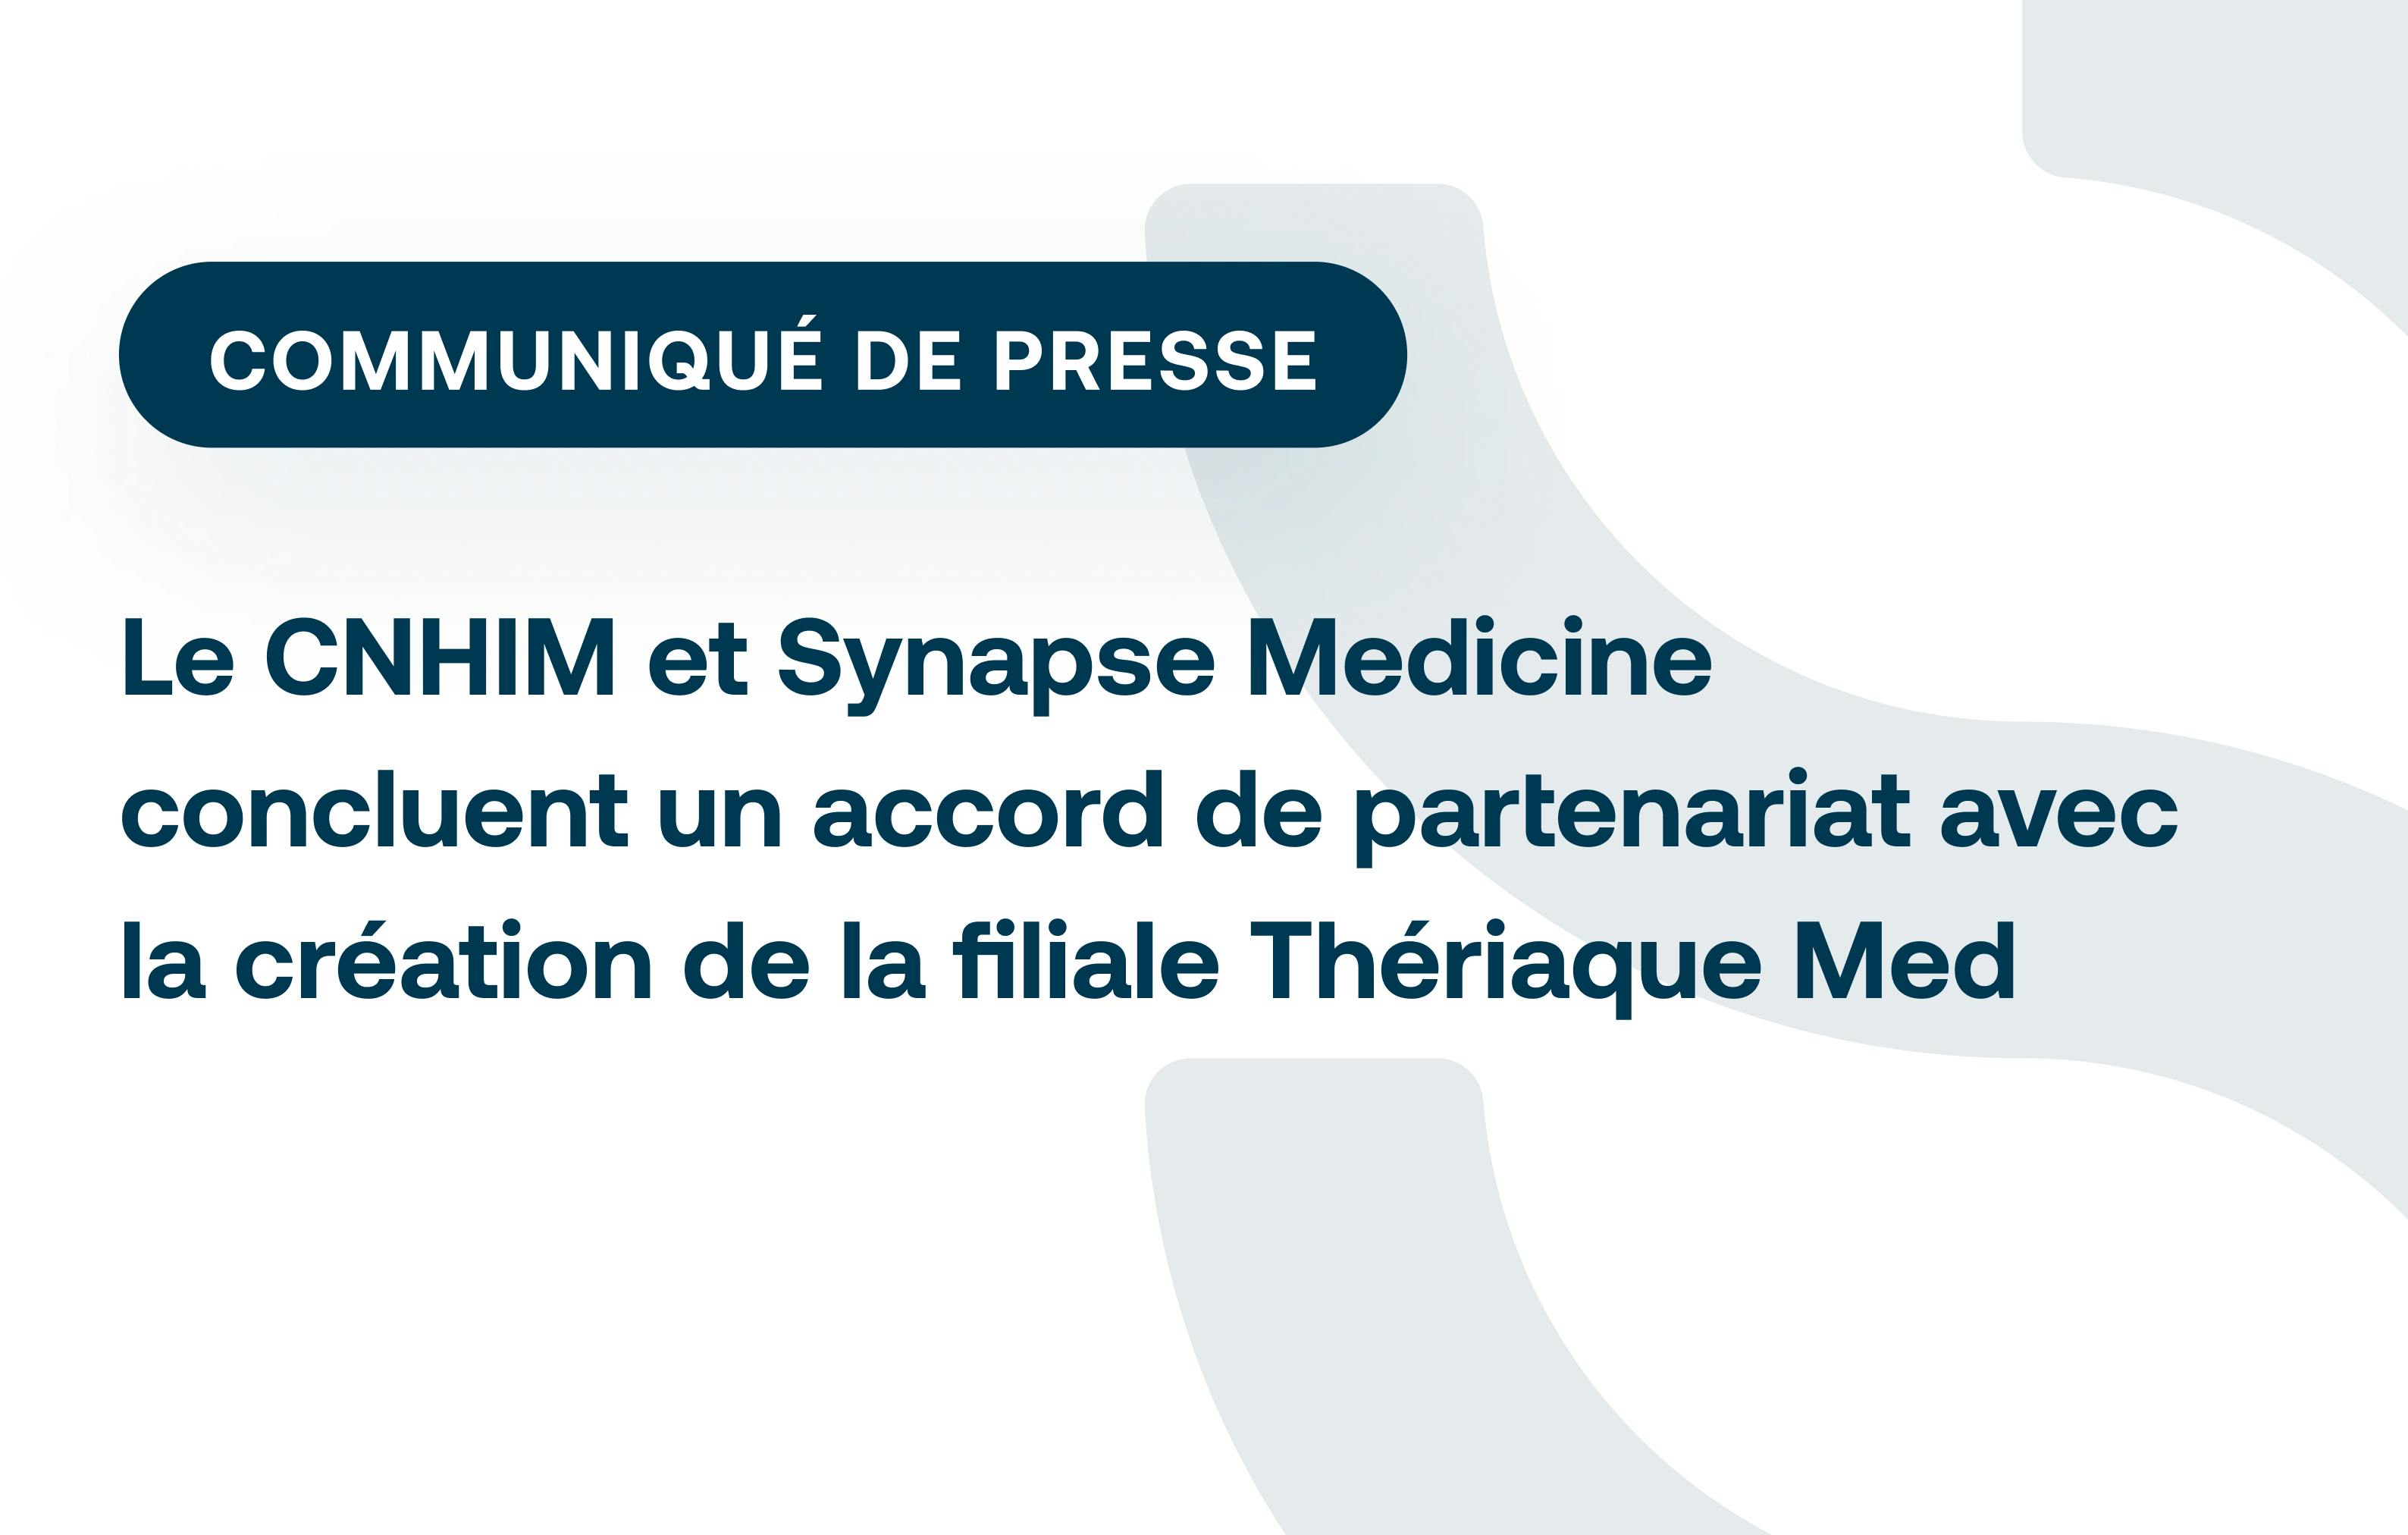 Le CNHIM et Synapse Medicine concluent un accord de partenariat avec la création de la filiale Thériaque Med